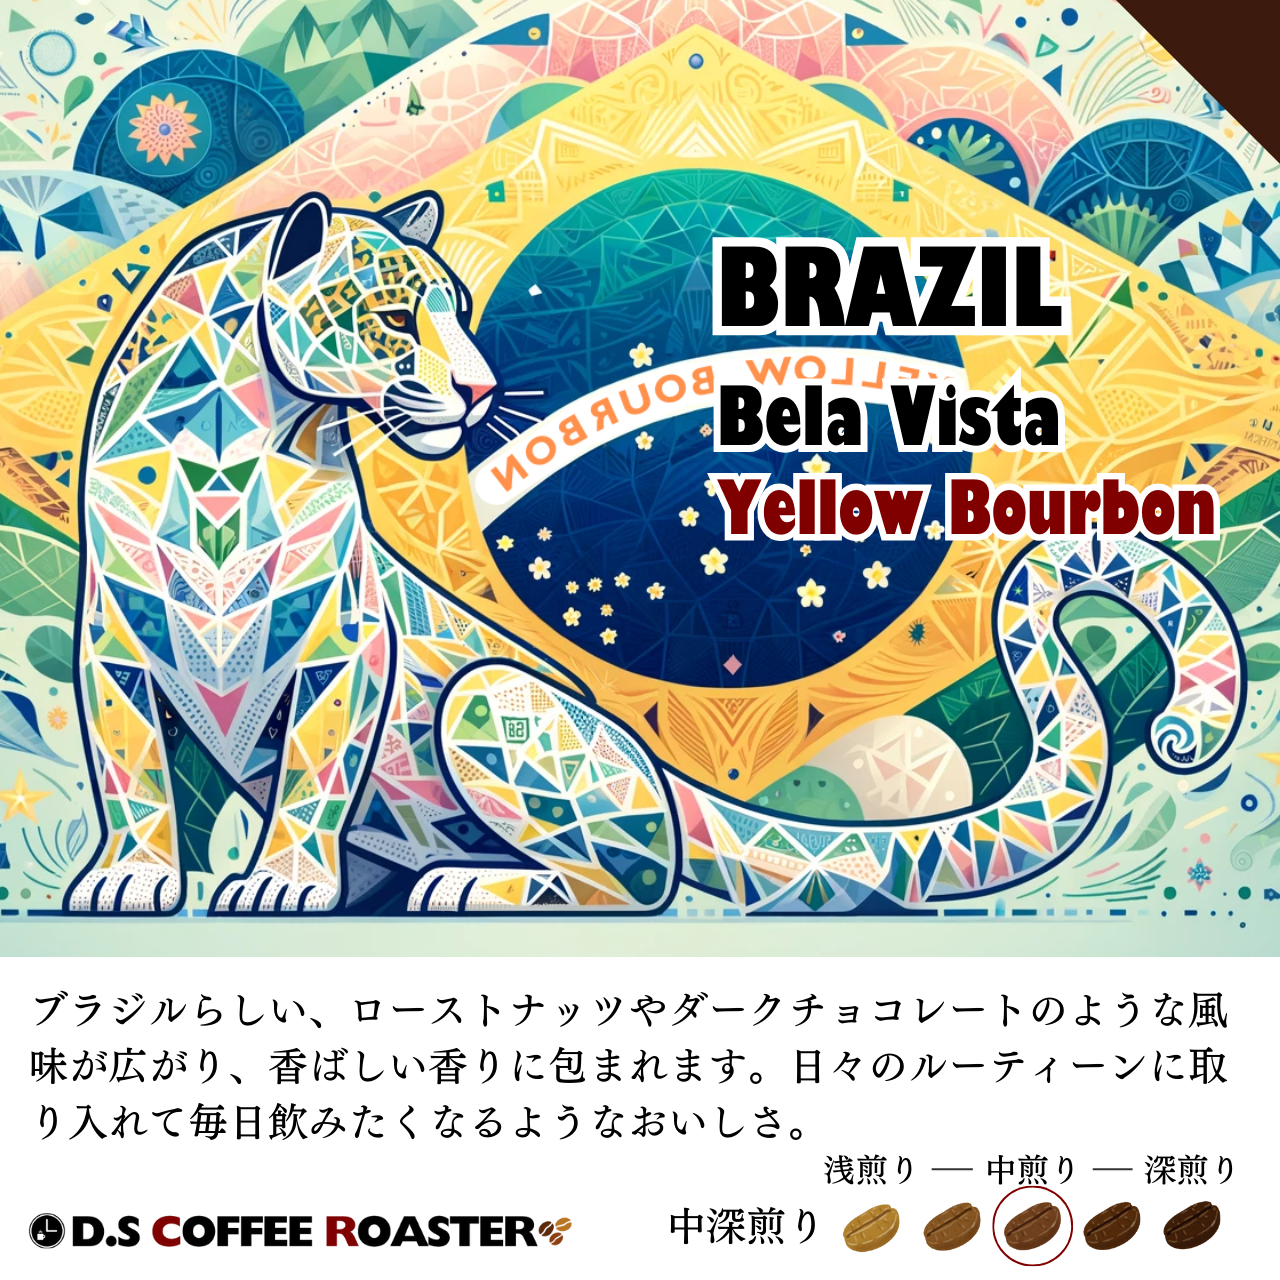 毎日飲みたい ブラジル イエローブルボン 120g(澤田 大介さん)のメインイメージ